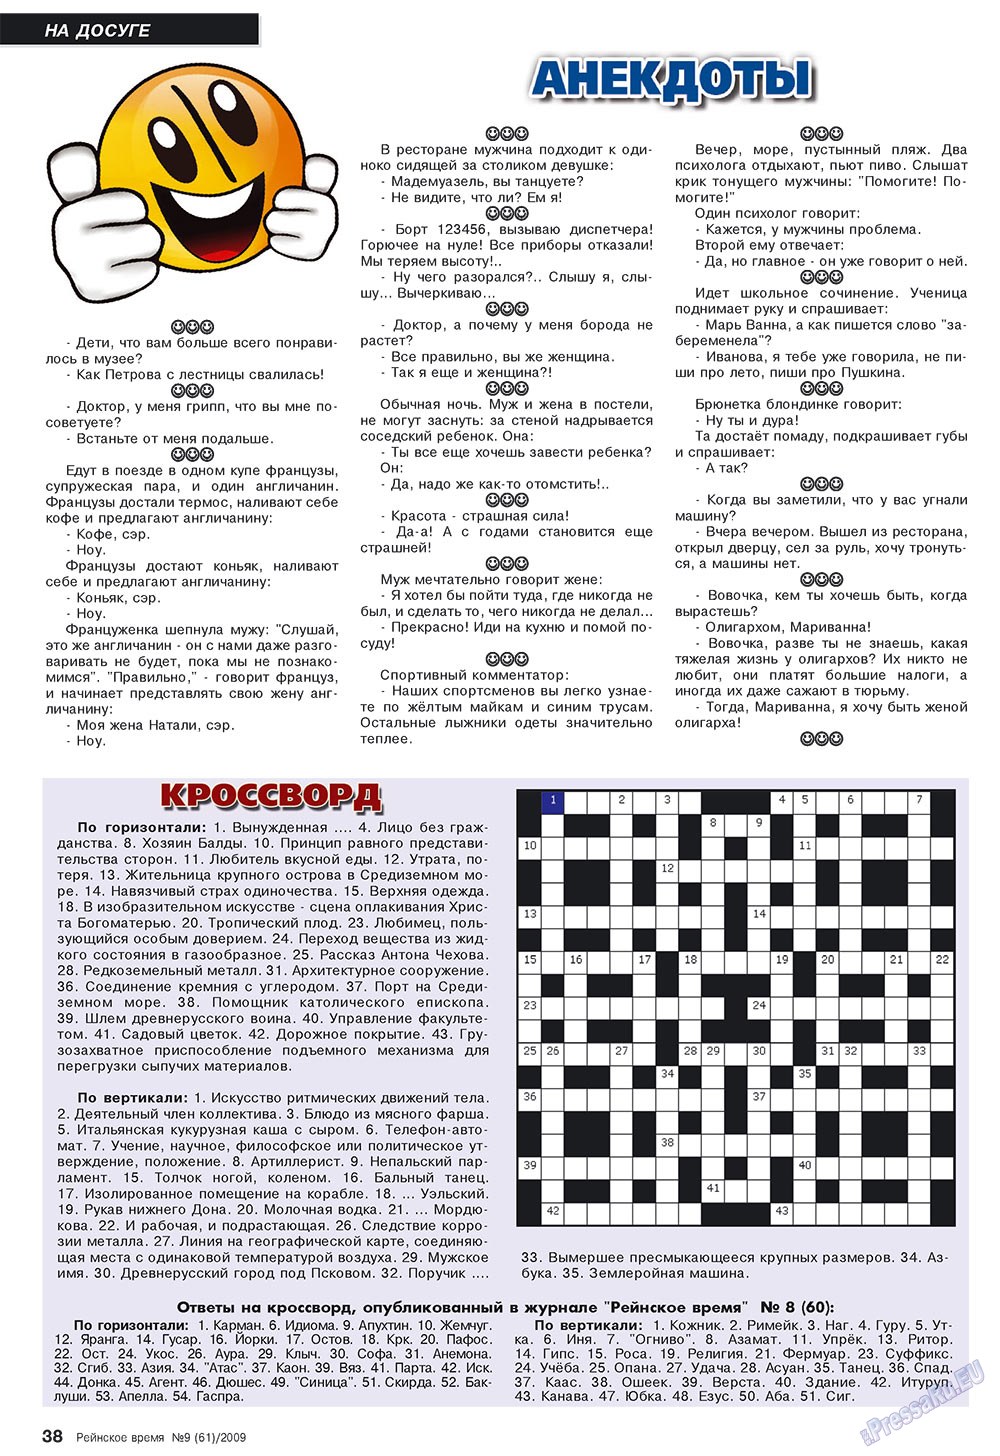 Rejnskoe vremja (Zeitschrift). 2009 Jahr, Ausgabe 9, Seite 38